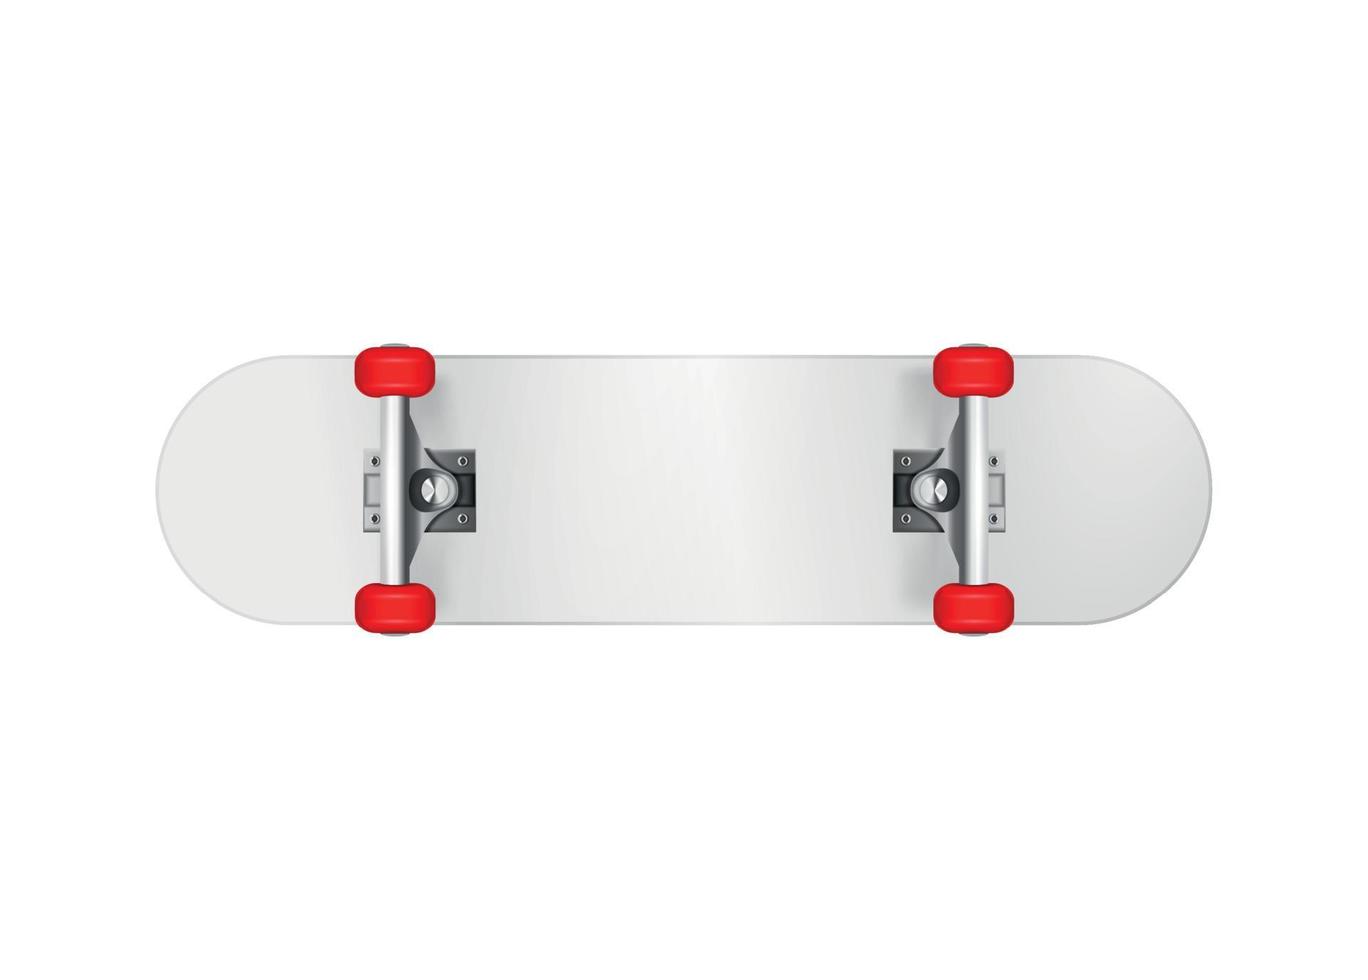 weiße Skateboard-Bodenzusammensetzung vektor